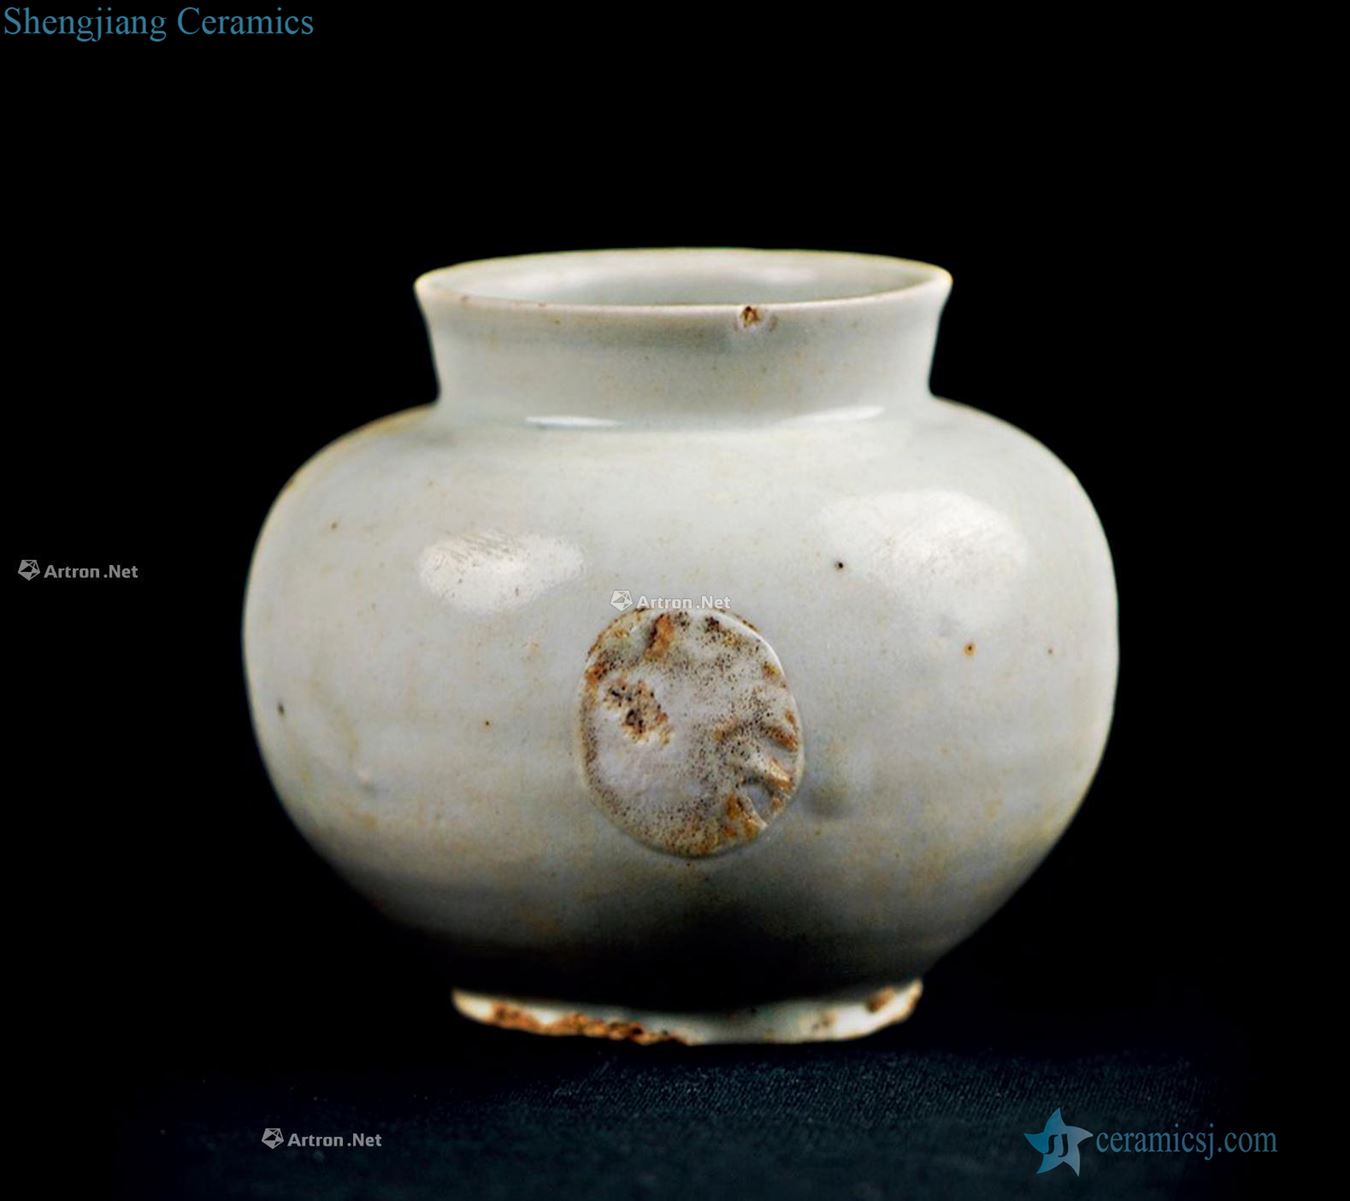 White glazed pot koryo period (918-1392)